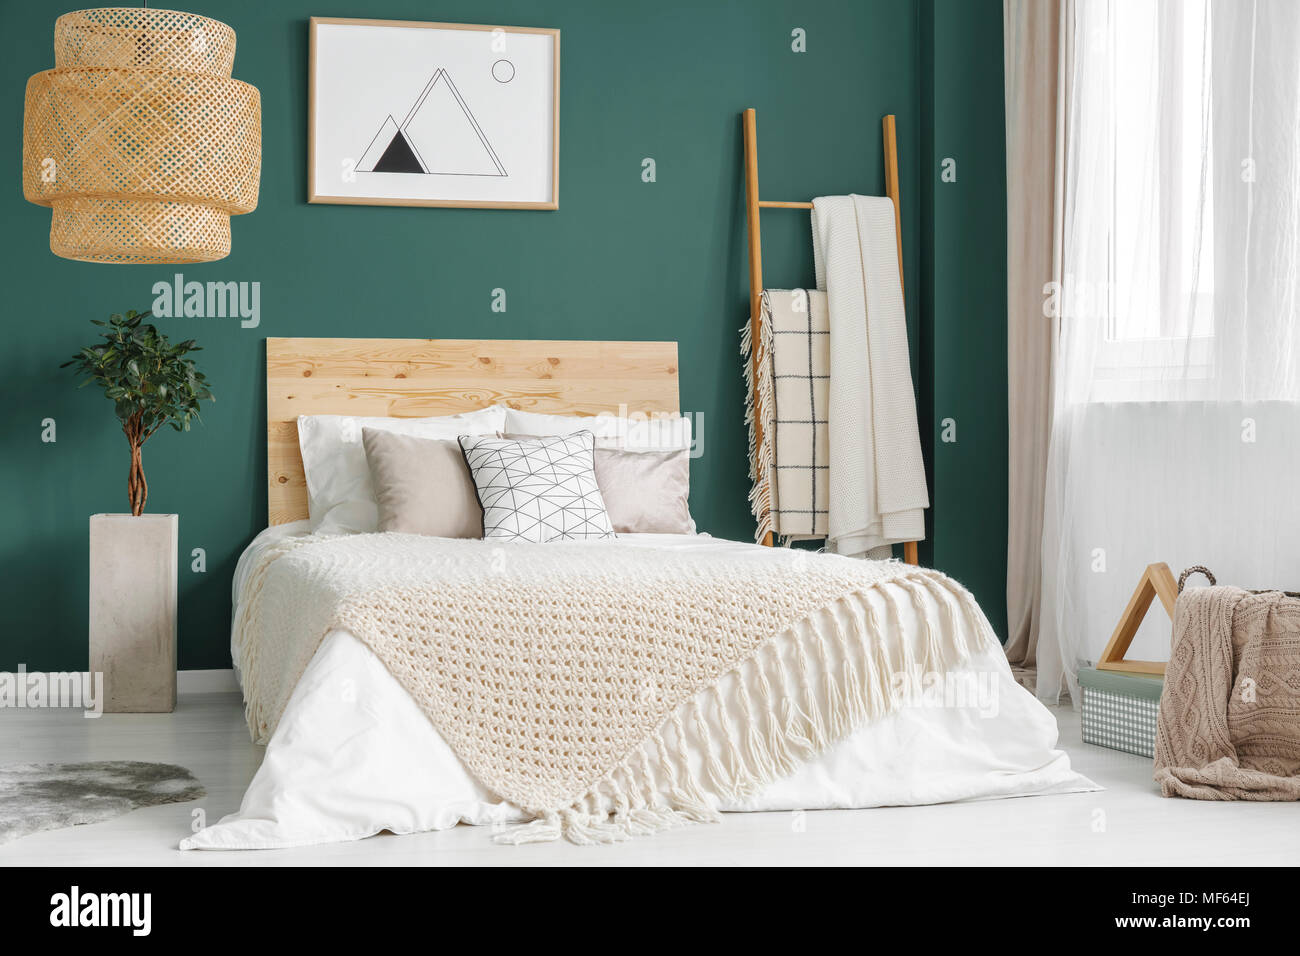 Anlage und Rattan Lampe grün gemütliches Schlafzimmer mit Bett aus Holz gegen die Wand mit Poster Stockfoto